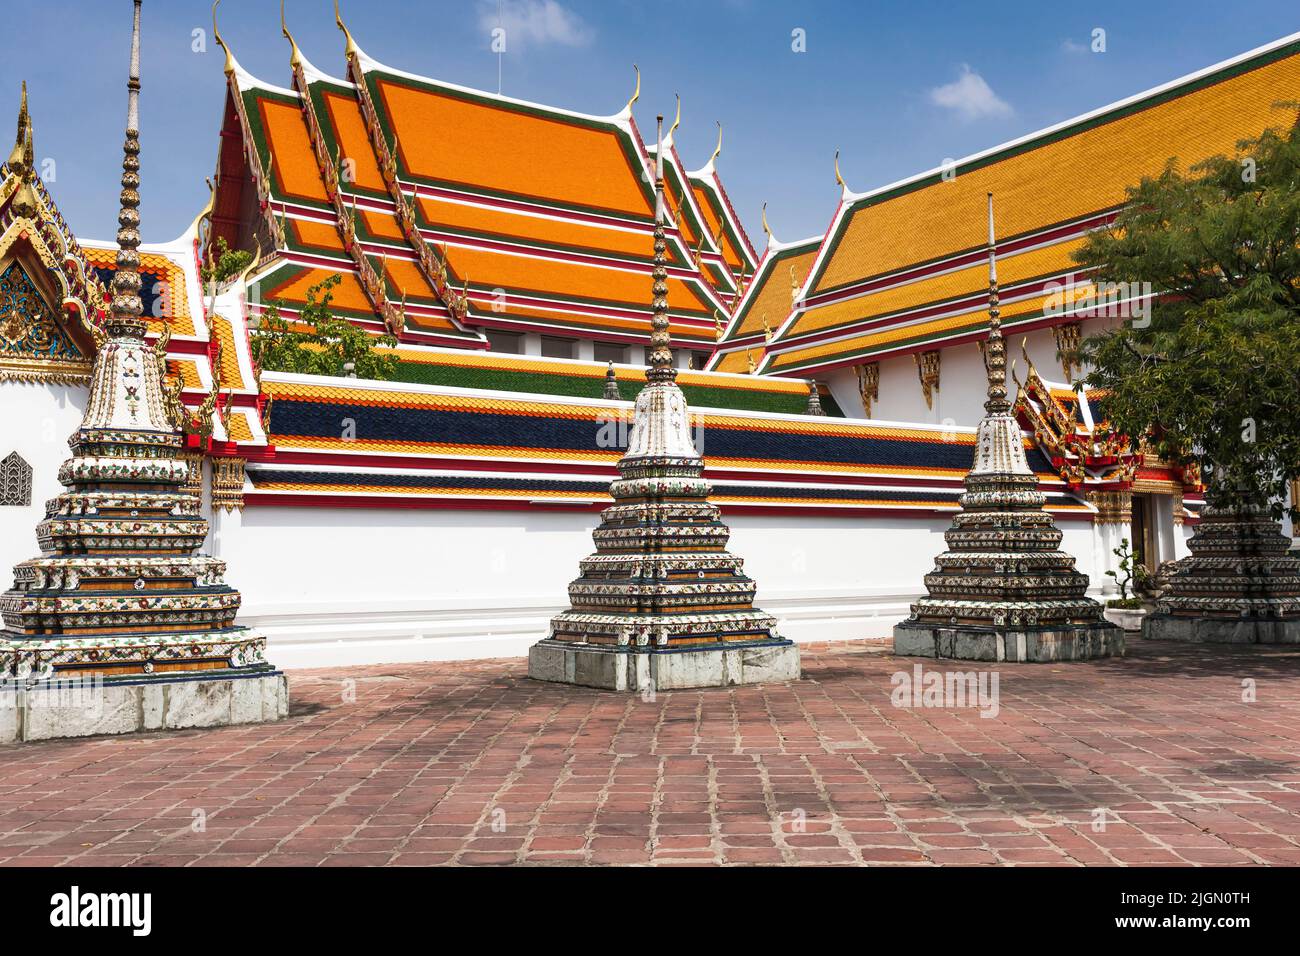 Wat Pho, Templo del Buda Reclinado, Wat Phra Chetuphon, pequeños chedi y coloridos techos, Bangkok, Tailandia, Sudeste Asiático, Asia Foto de stock